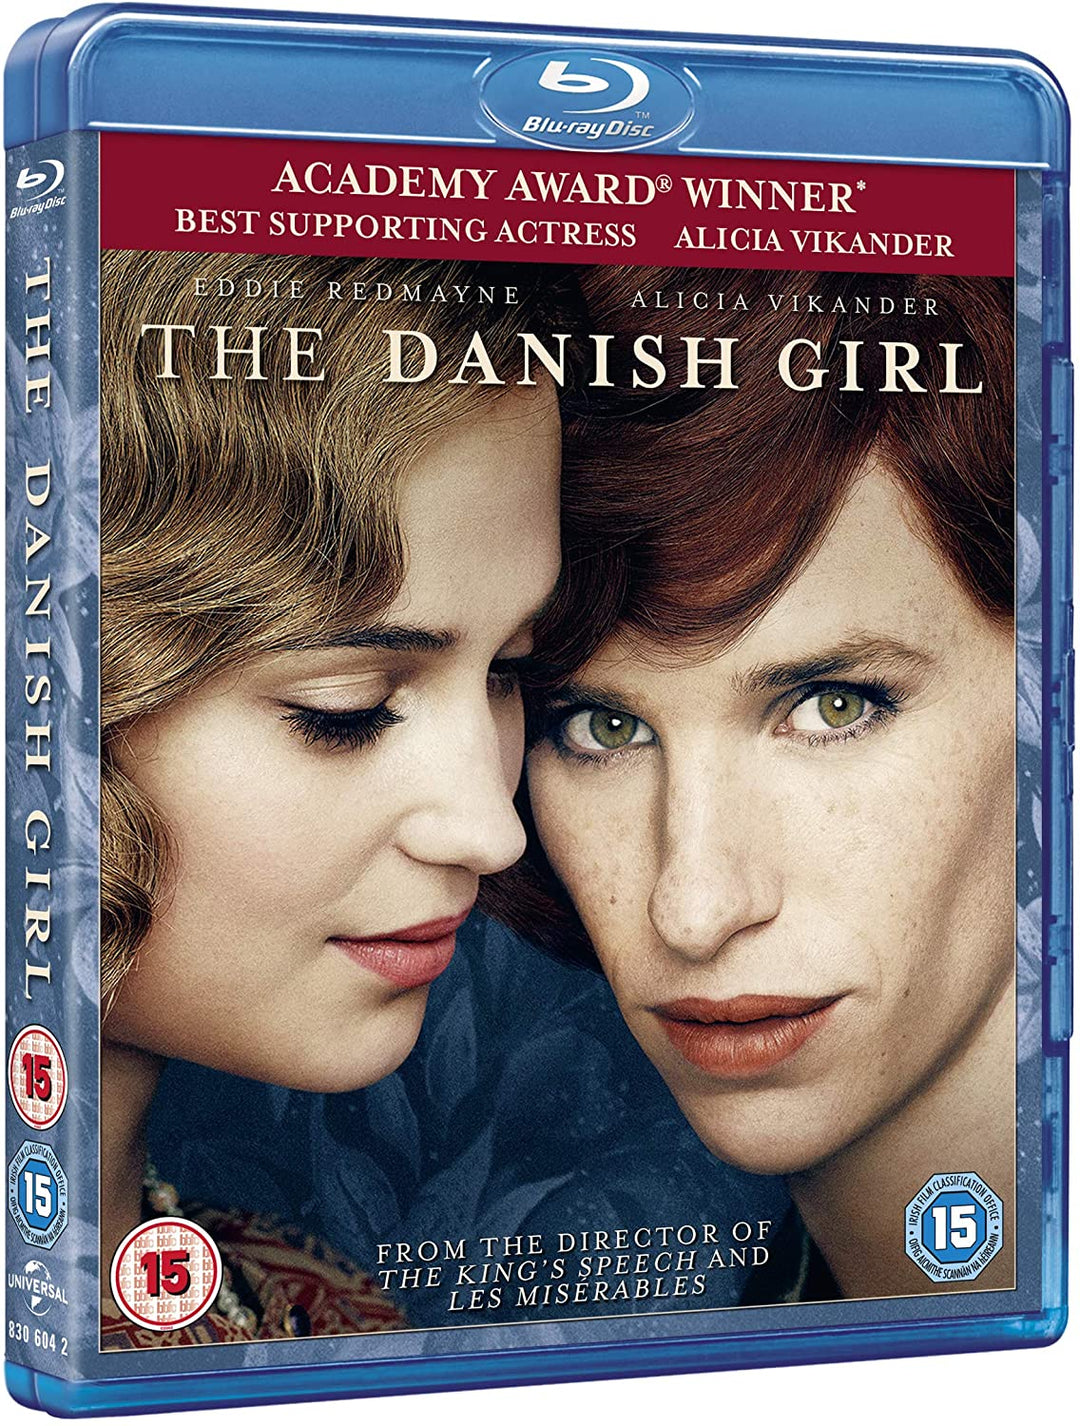 The Danish Girl (UV-Kopie) [2015] – Drama/Romanze [Blu-ray]